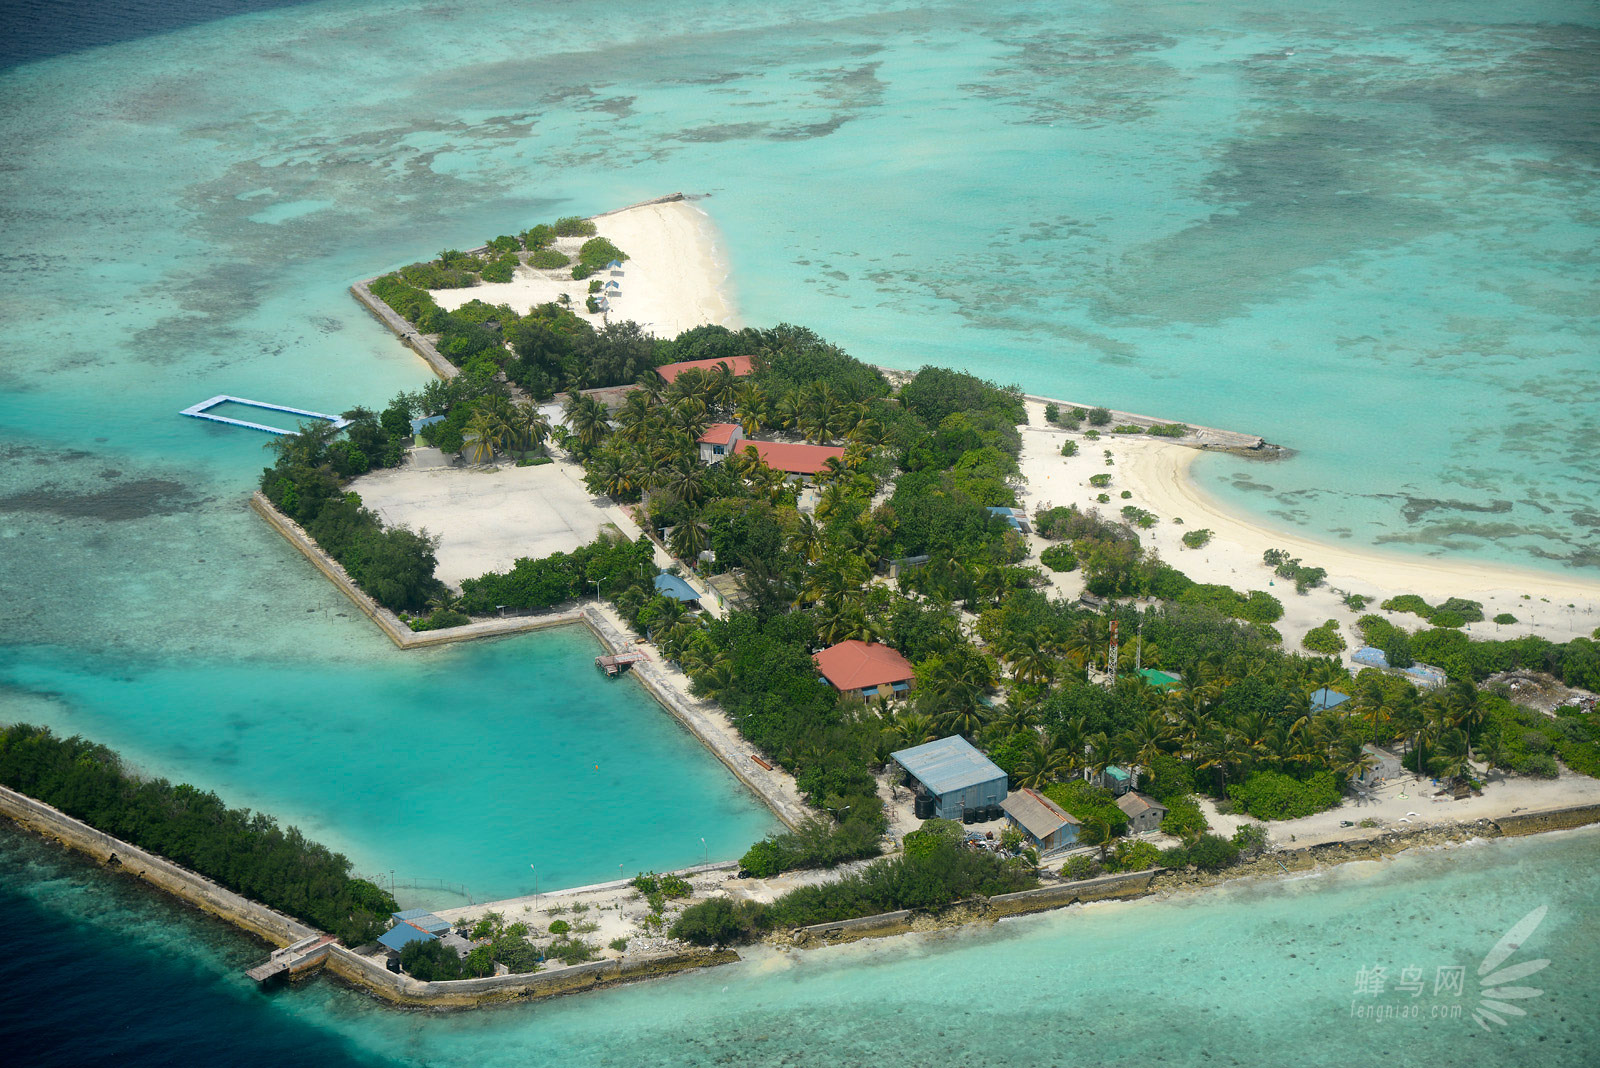 海洋国旅官网|马尔代夫岛屿排名|马尔代夫选岛攻略|马尔代夫双人游报价|深圳海洋国旅